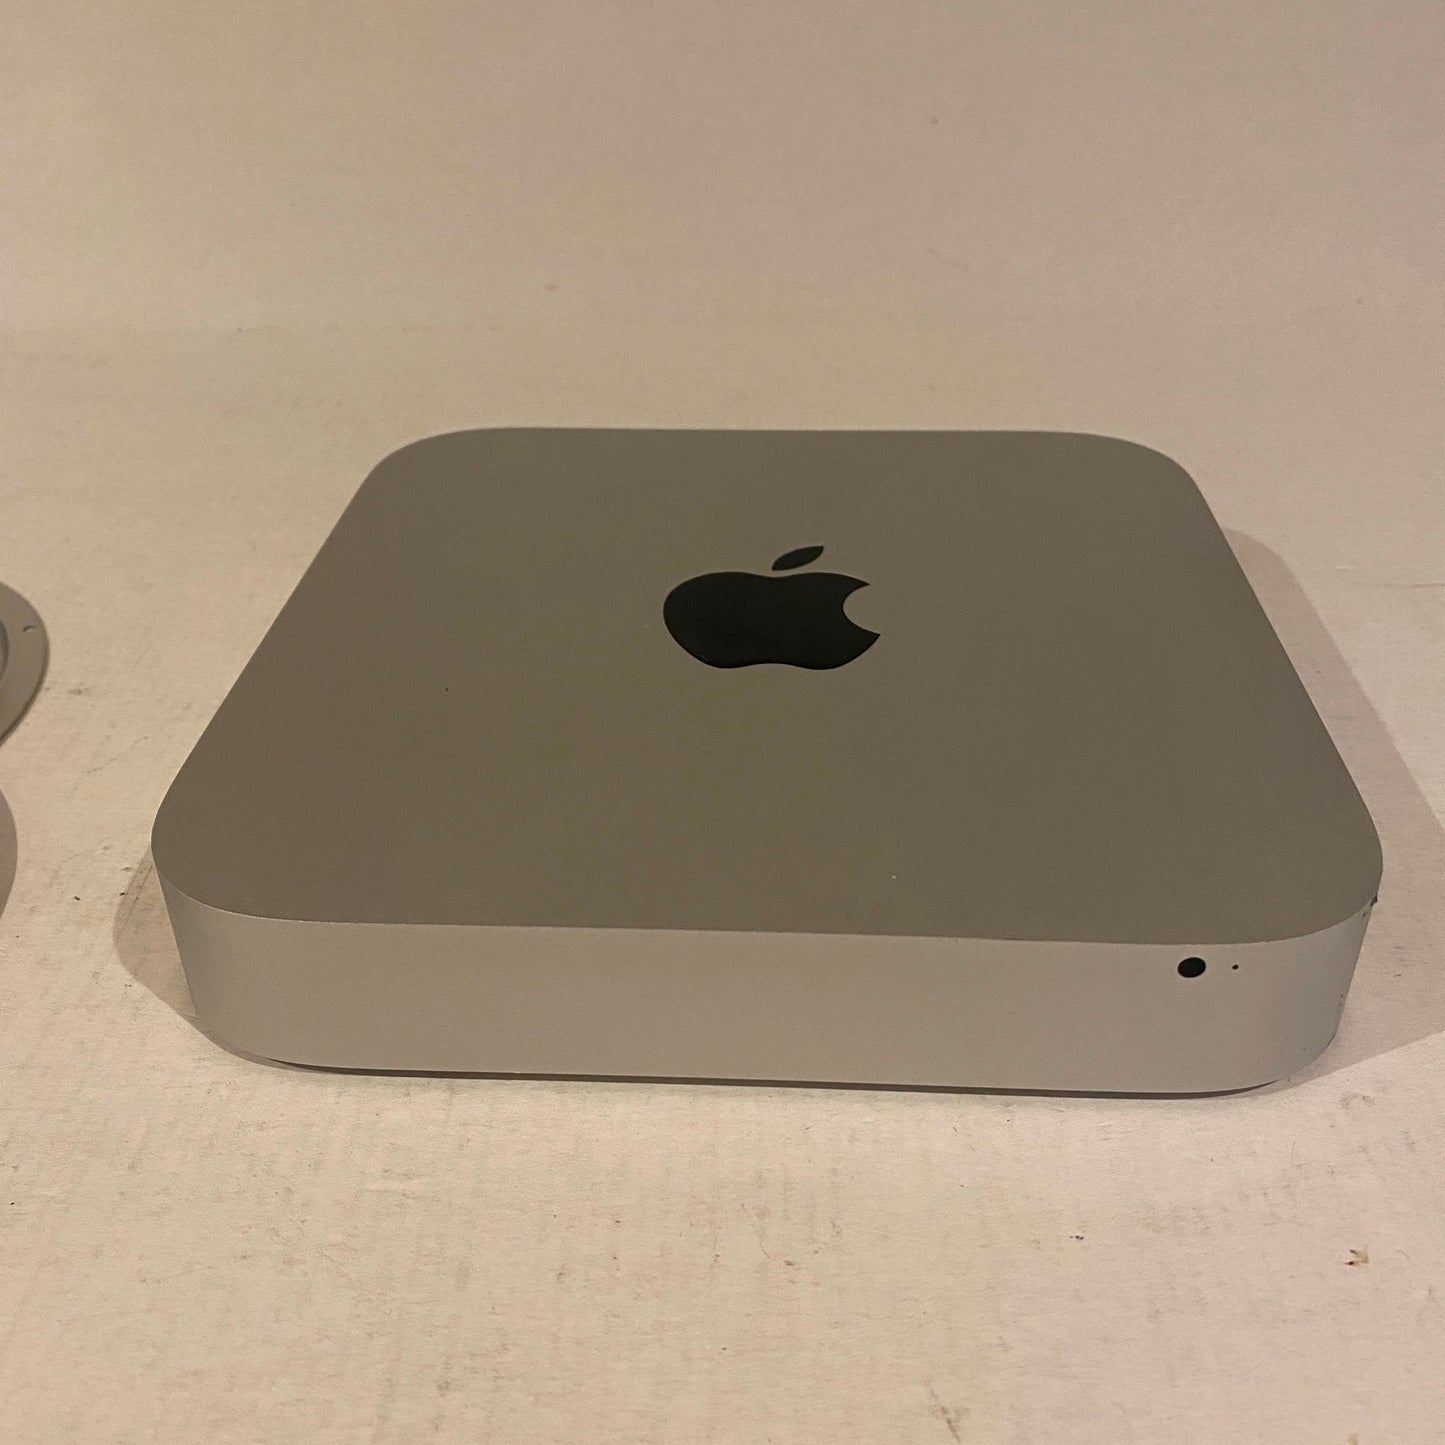 Late 2014 Mac Mini Case